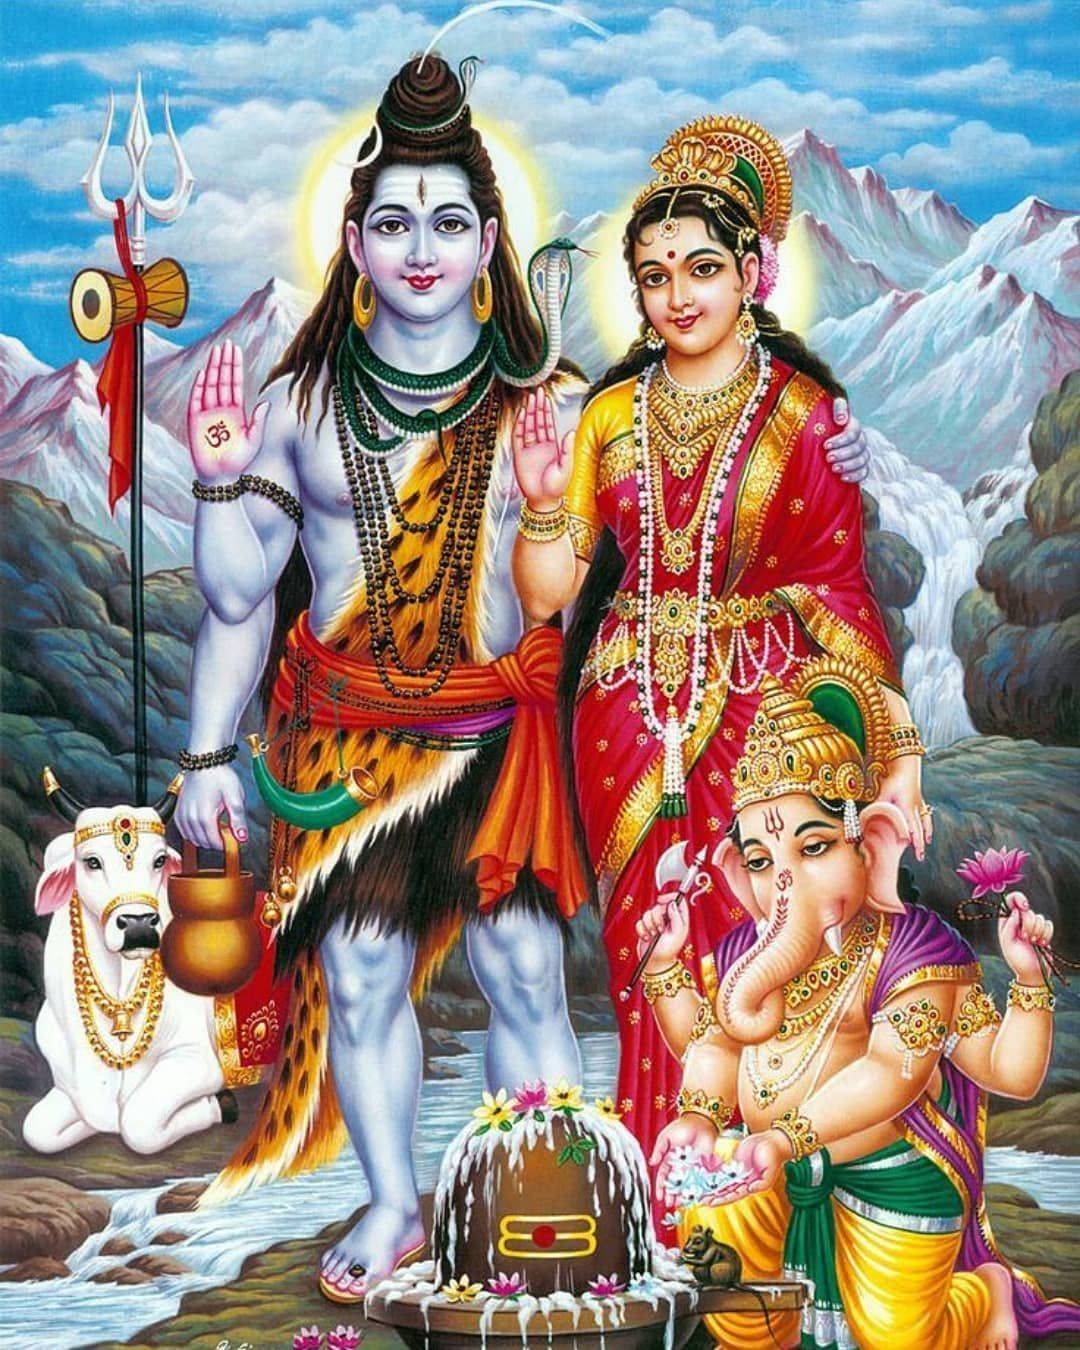 Богиня сарасвати - покровительница искусства в индуизме.